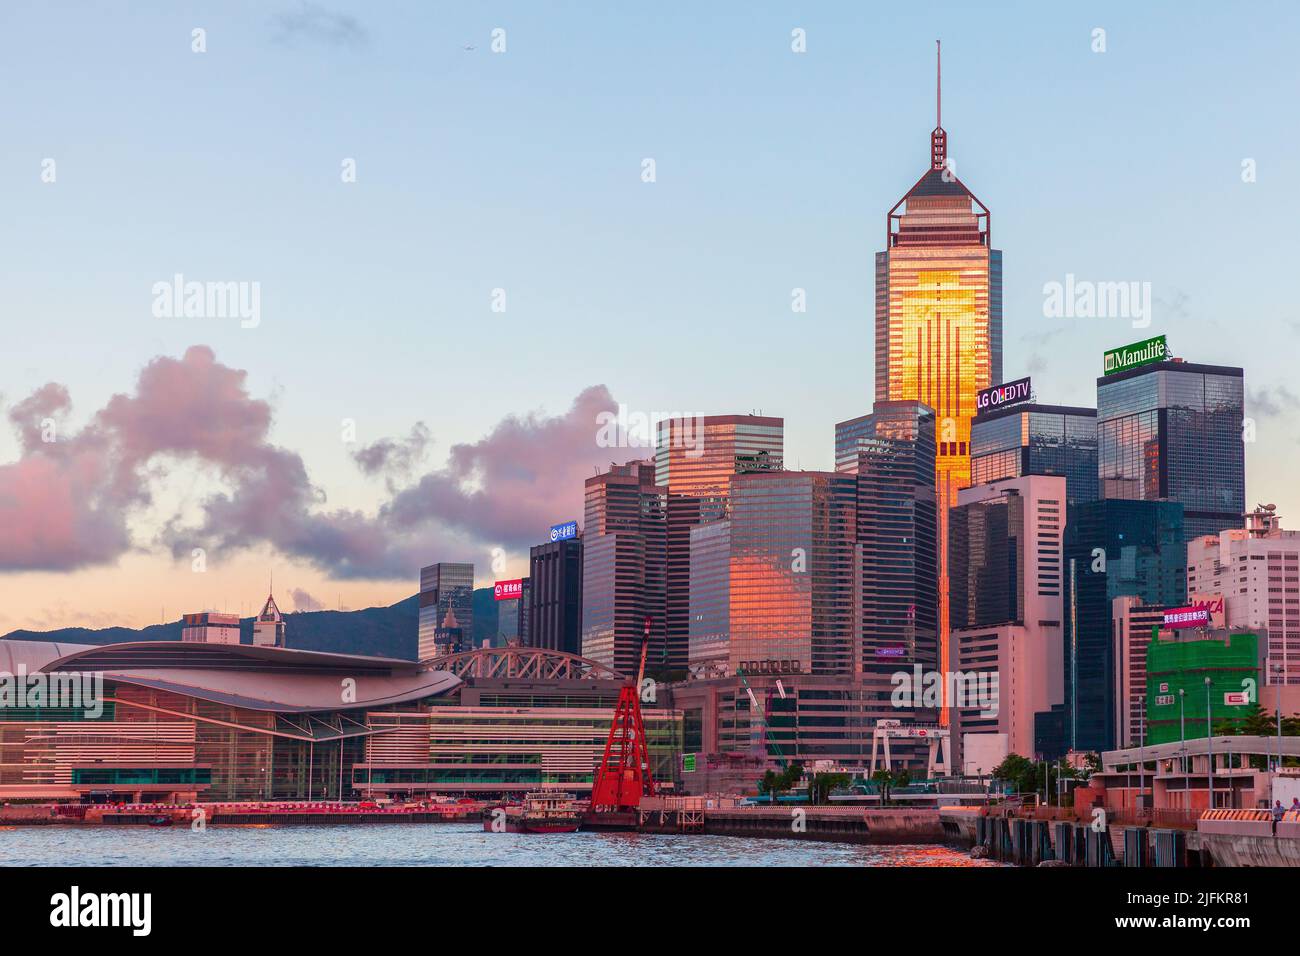 Hongkong - 11. Juli 2017: Central District of Hong Kong, Küstenfoto, aufgenommen an einem Sommerabend. Skyline mit hohen Bürogebäuden Stockfoto